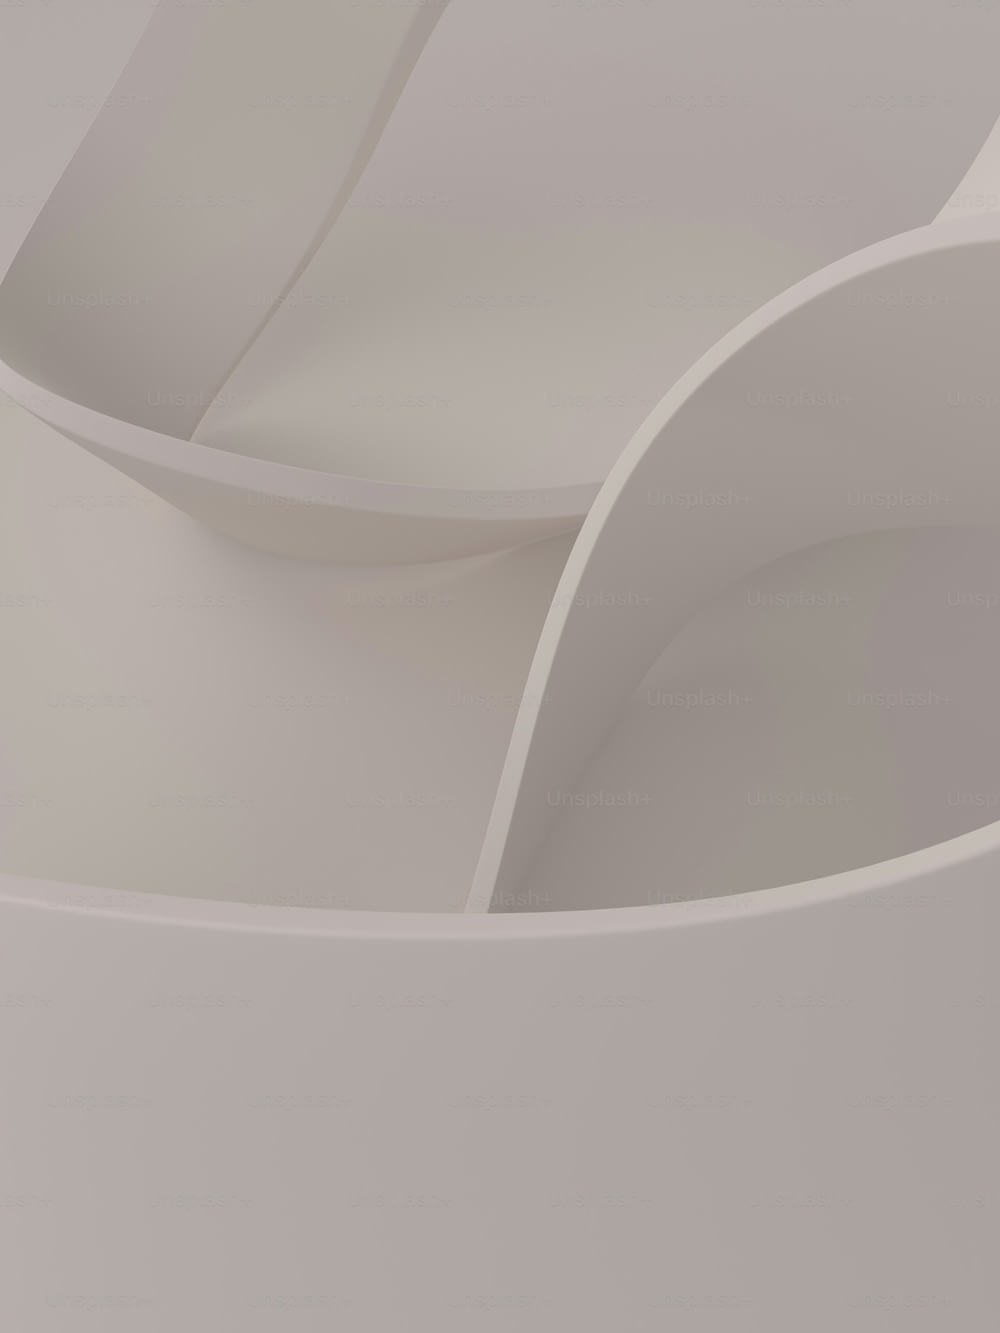 Un primer plano de un objeto blanco con bordes curvos